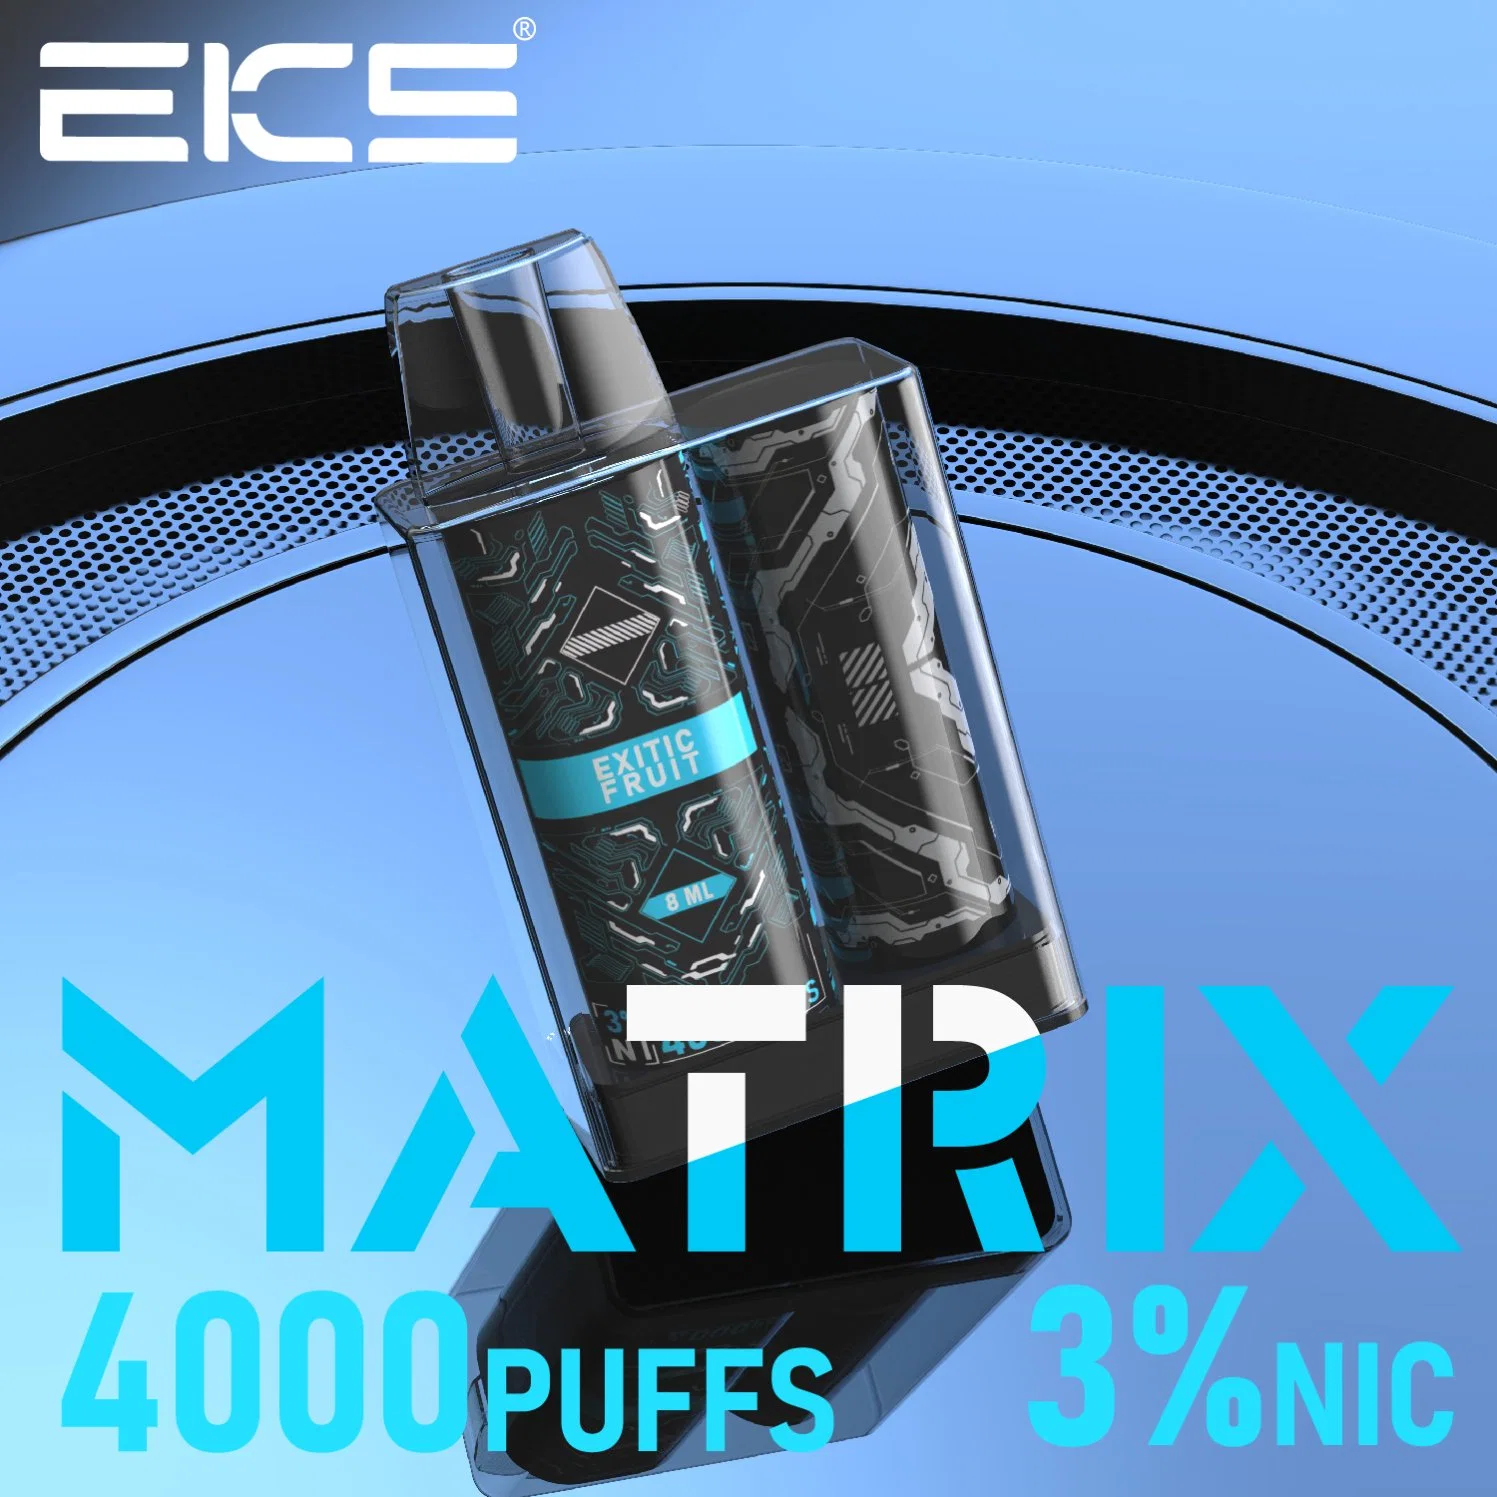 Eks Matrix 8ml 4000puffs Disposable Rechargeable Adjustable Airflow OEM Custom Manufacturers Wholesale Vape Electronic Cigarette E-Cigarette Vaper Wape